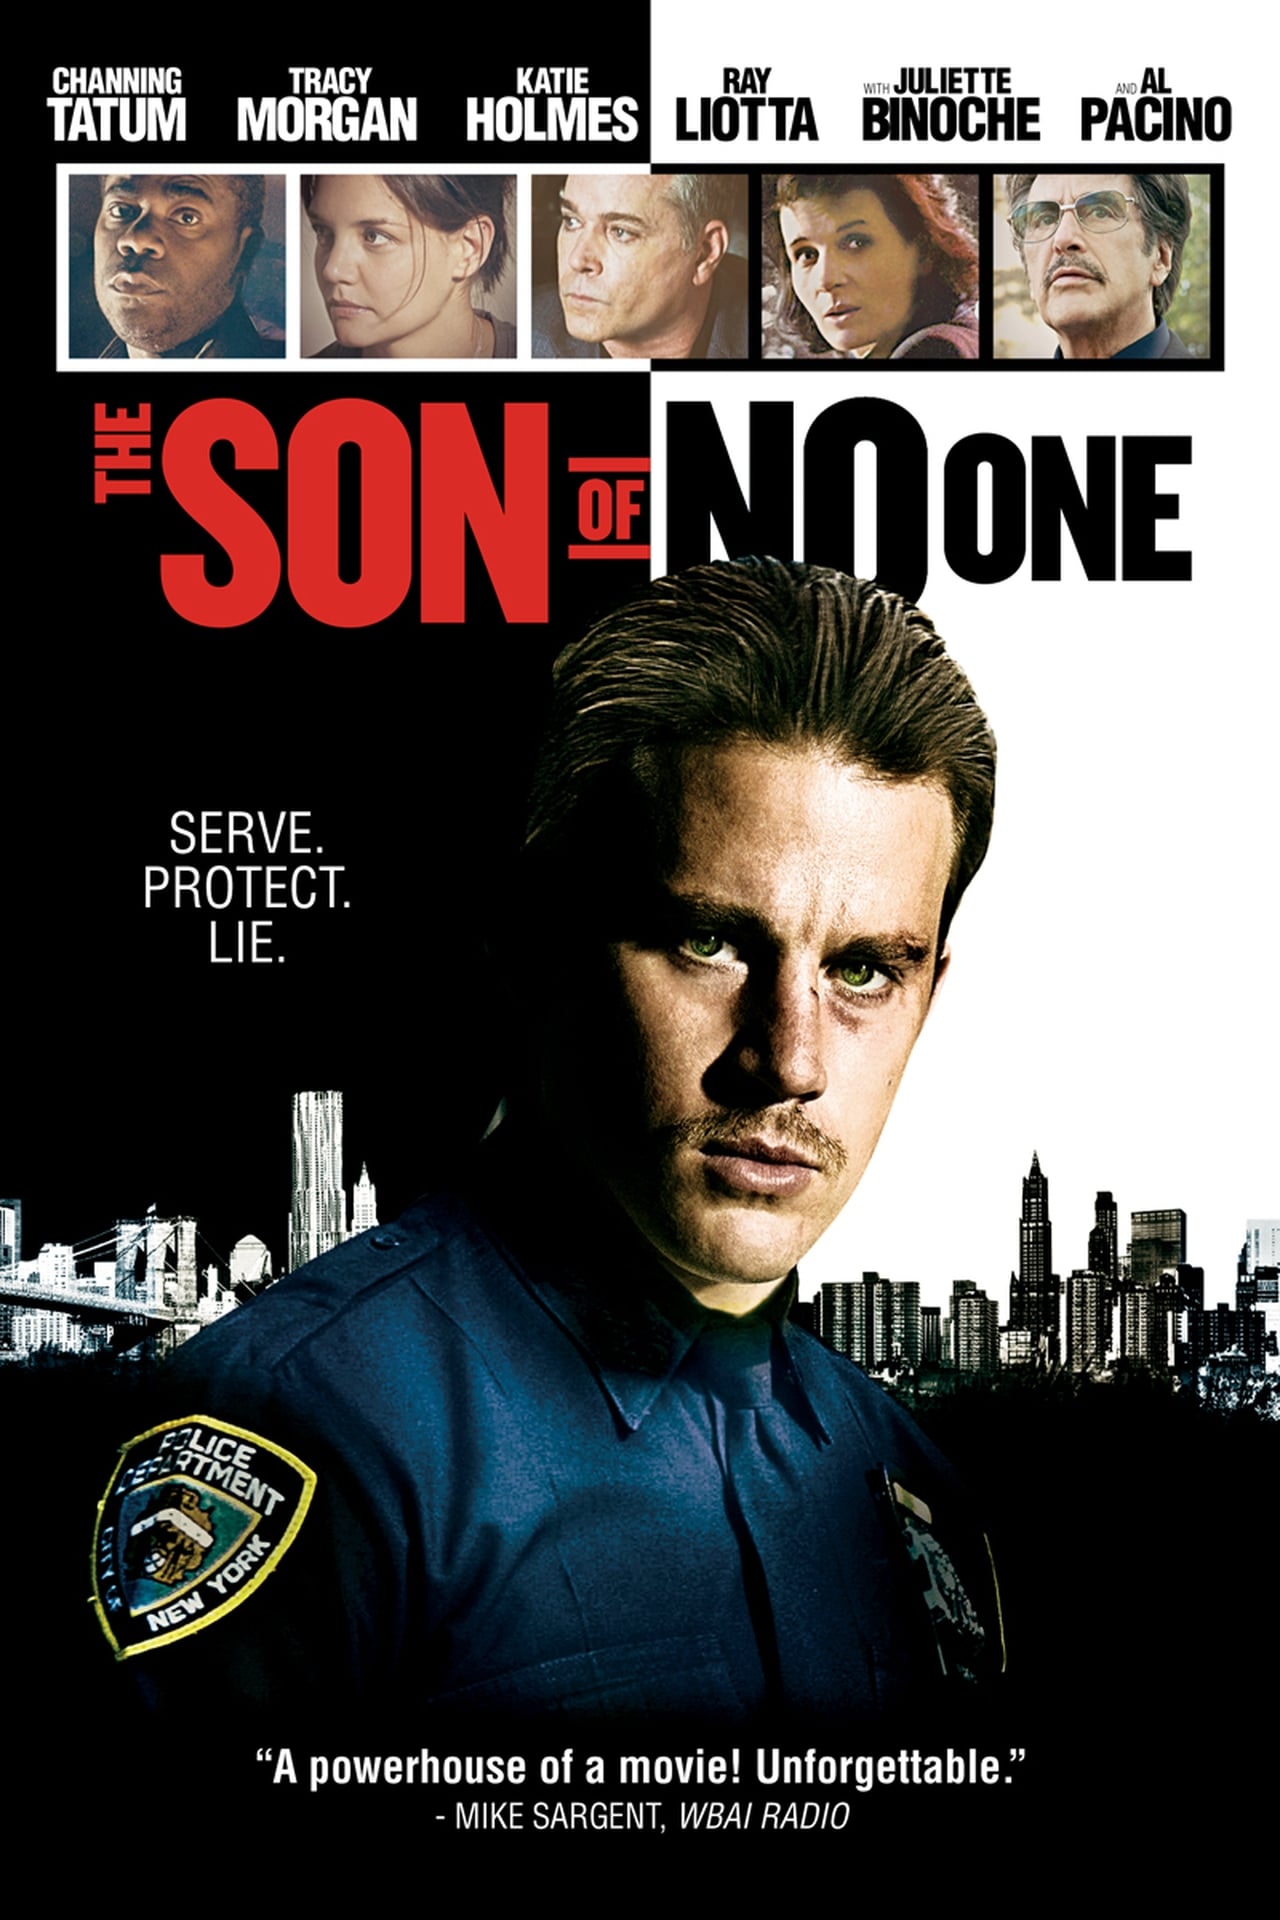 EN - The Son Of No One (2011) AL PACINO